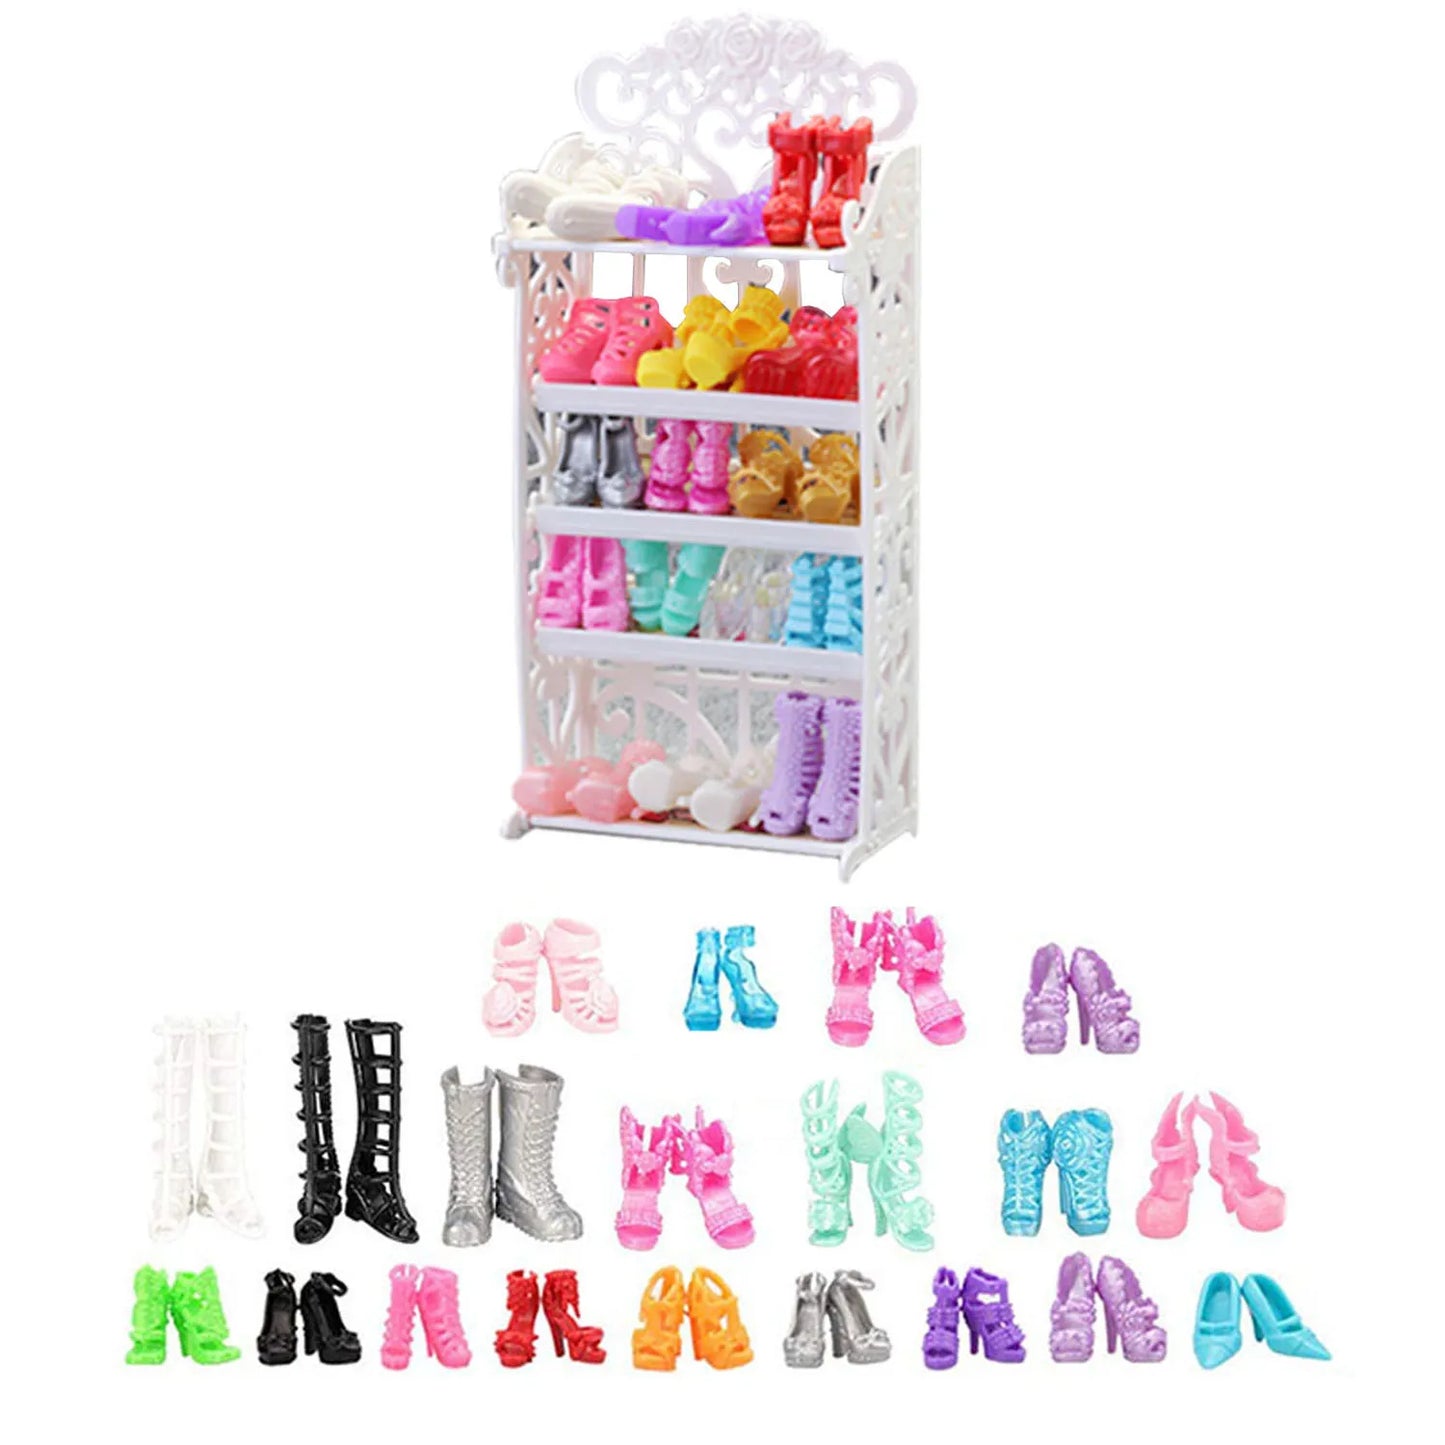 BABY HOUSE - Chaussures à talons hauts différentes, bottes adaptées aux accessoires de poupée Barbie de 11.8 pouces, jouets pour enfants et filles, cadeau d'anniversaire, 40 pièces